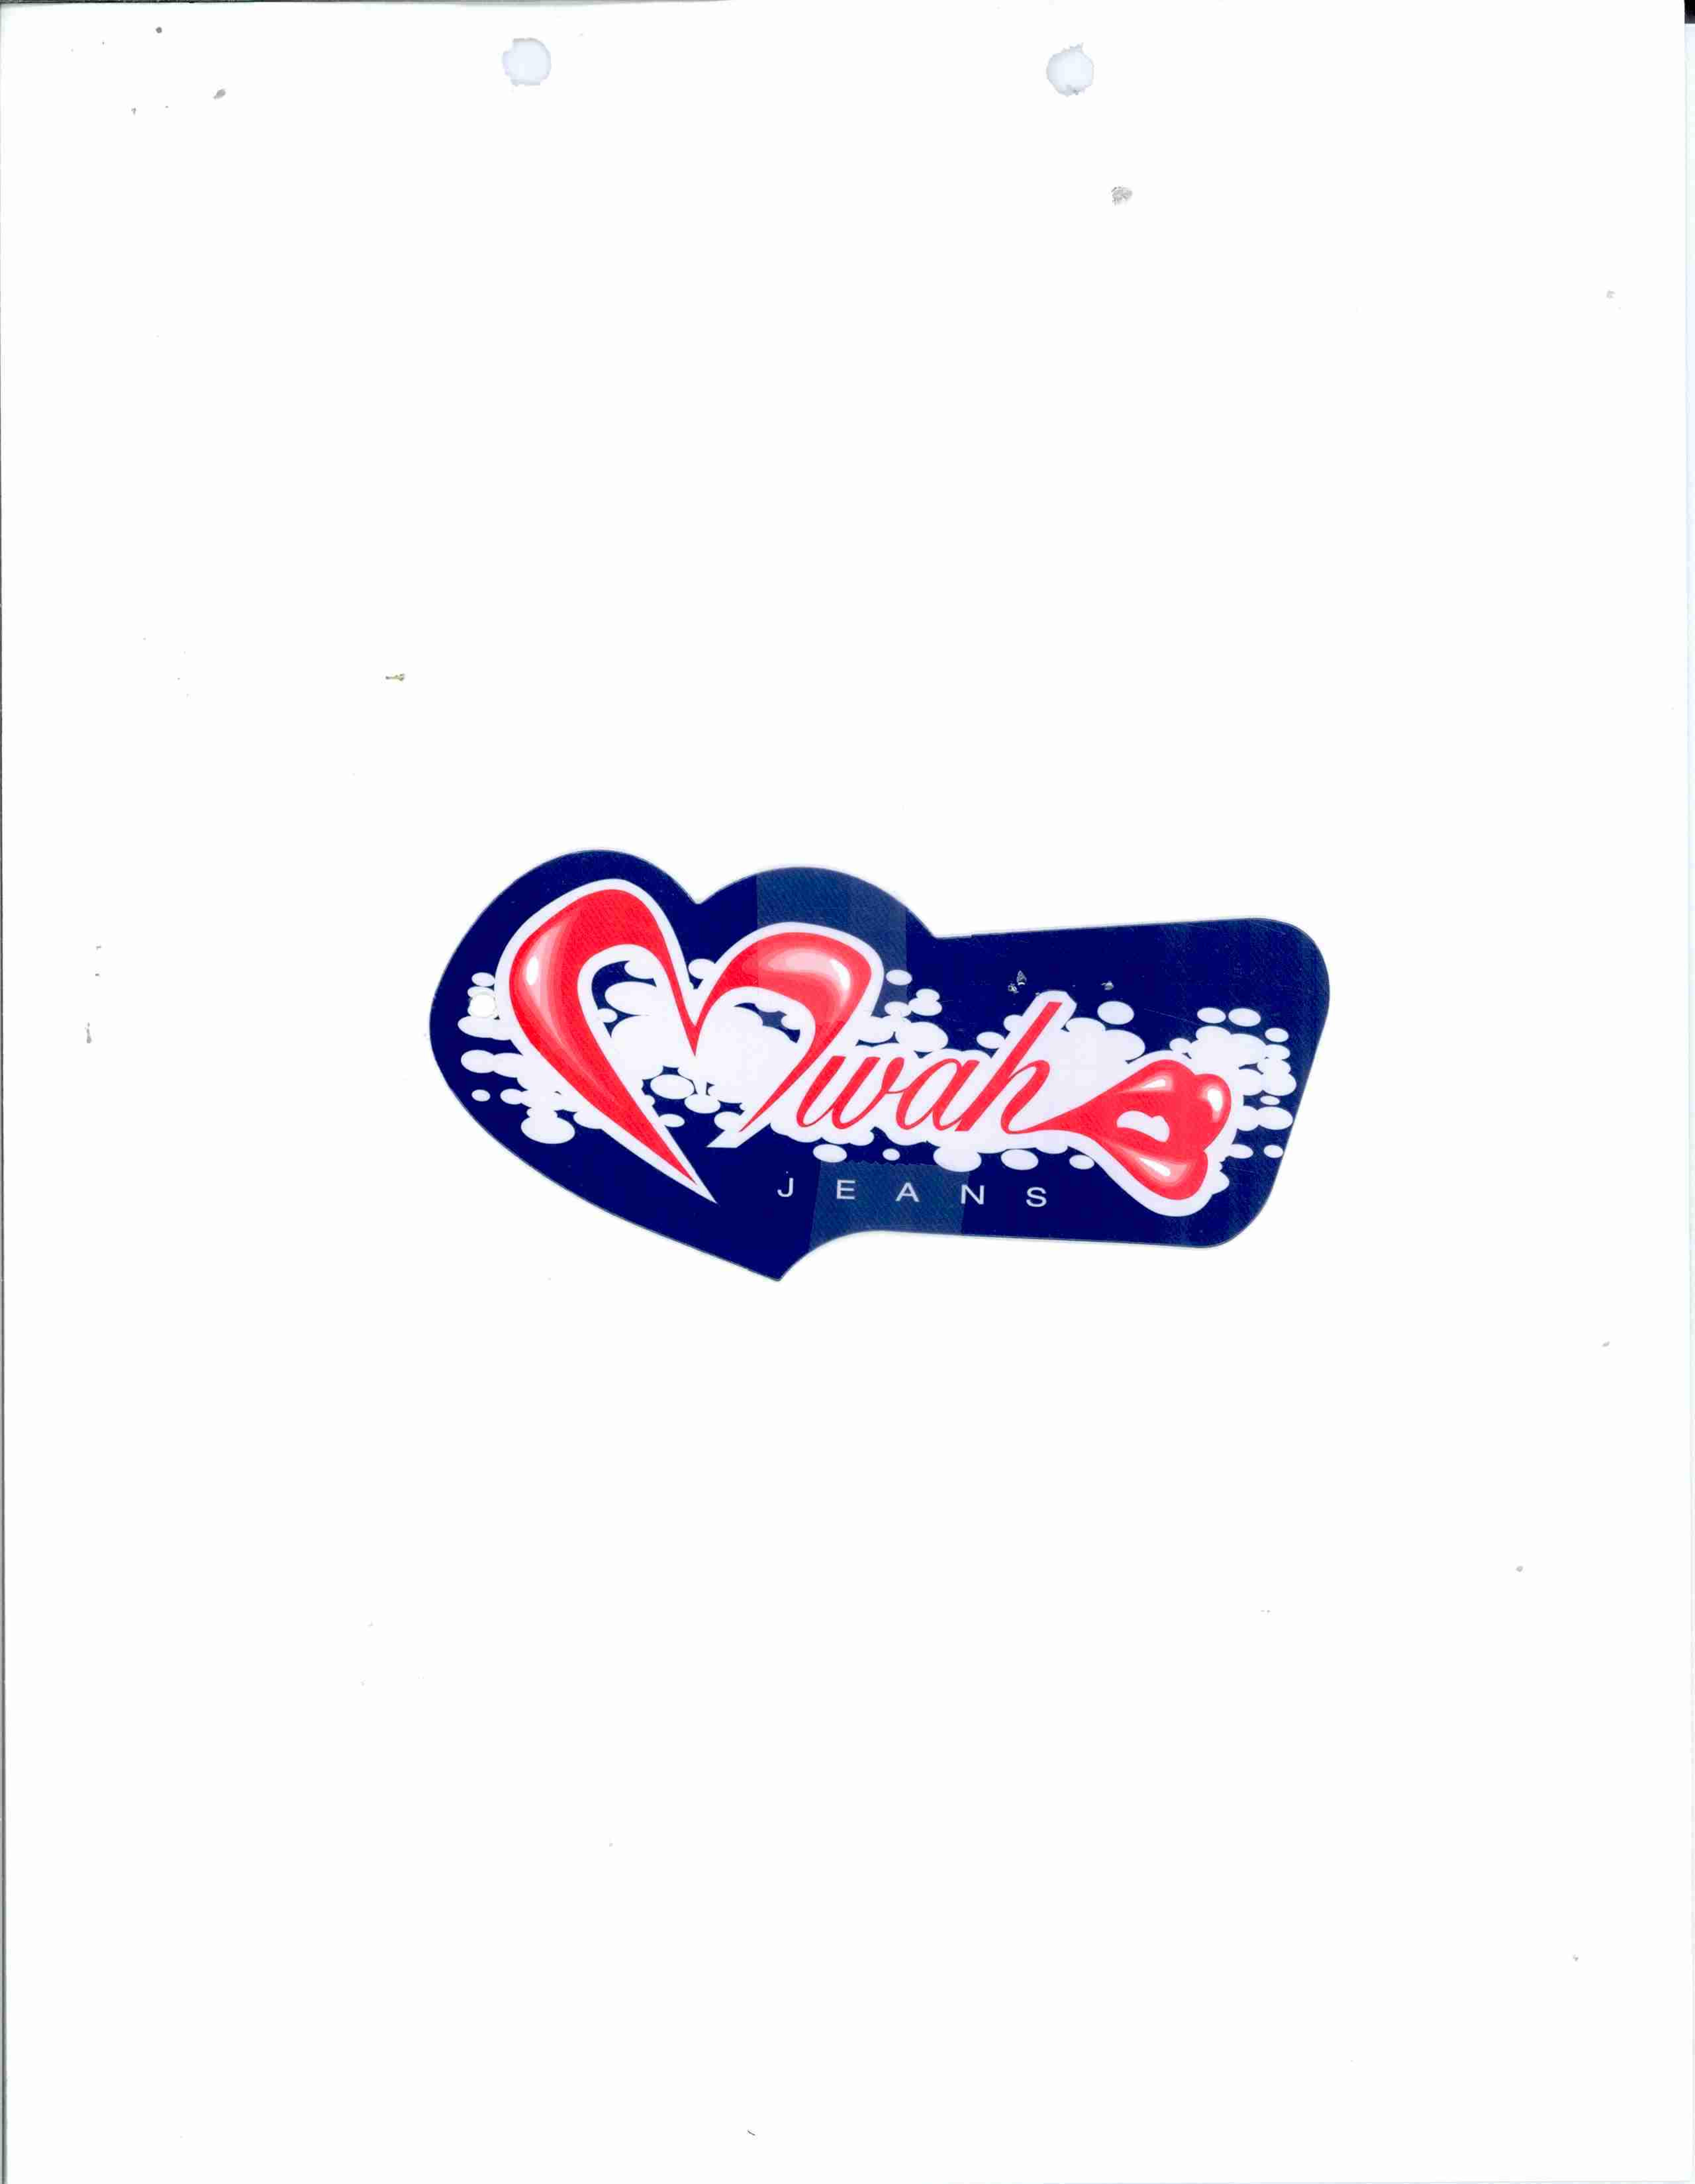 Trademark Logo MWAH